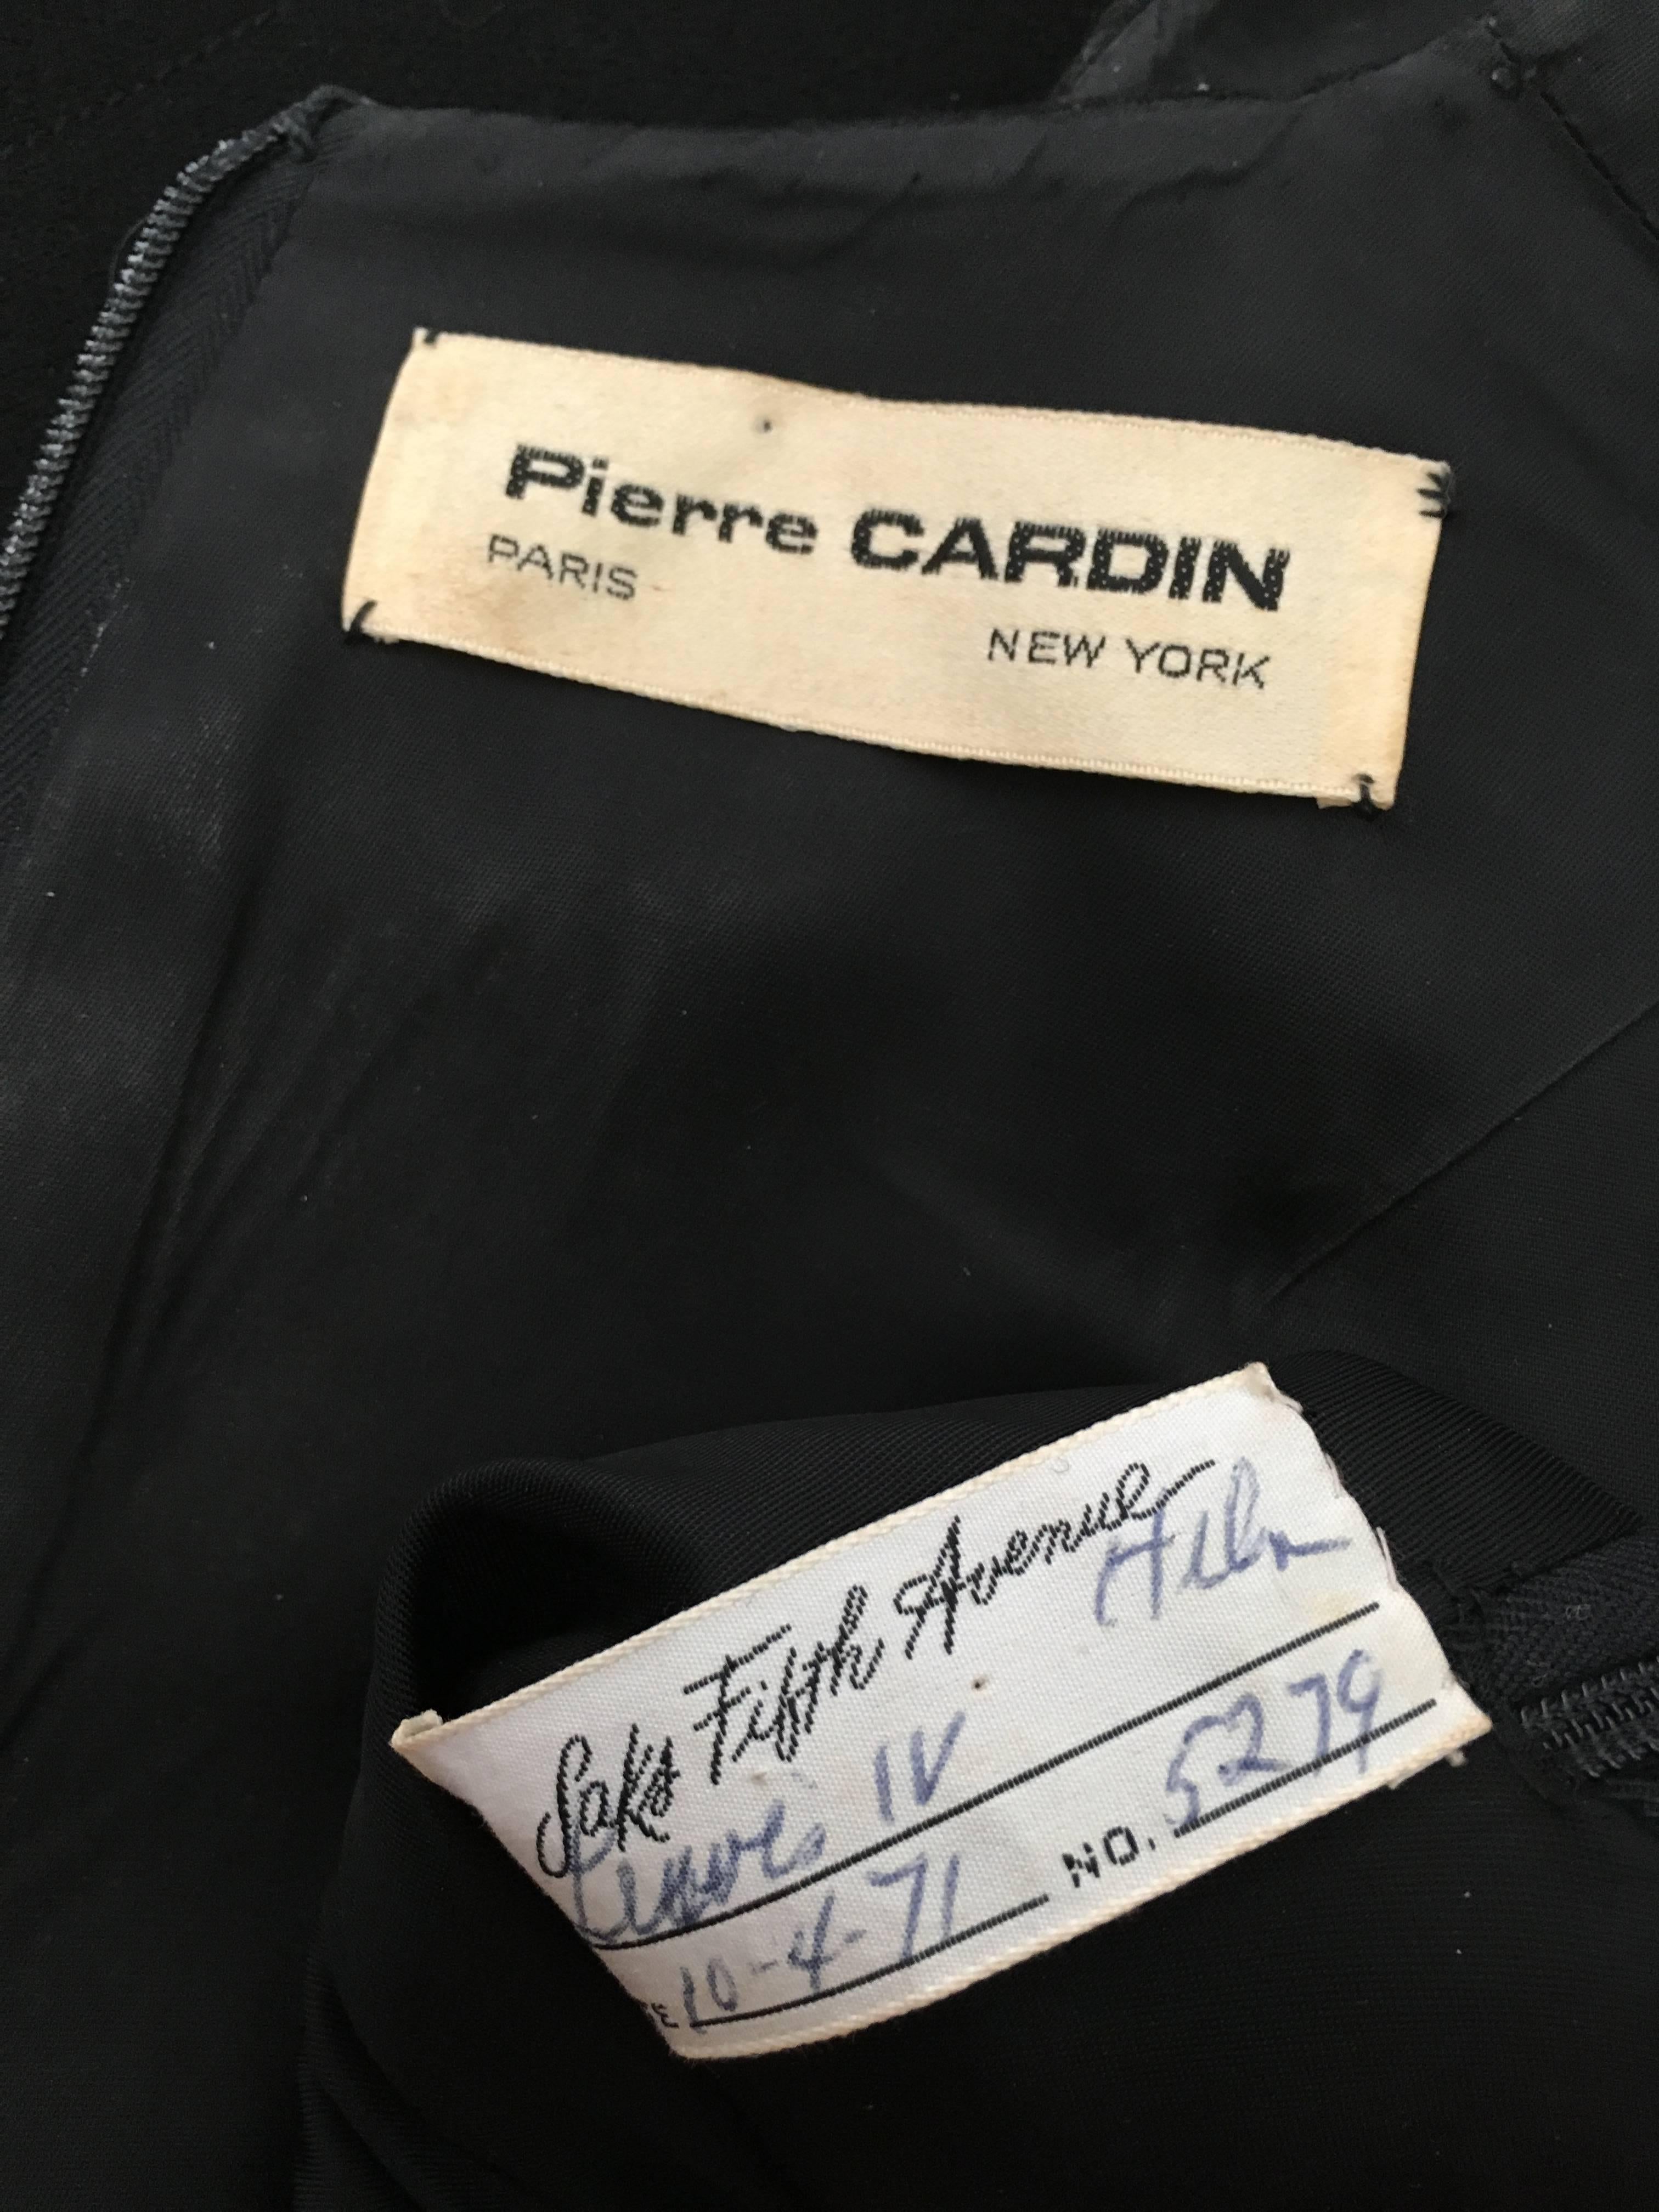 Pierre Cardin for Saks Fifth Avenue 1971 Black Wool Sleeveless Dress Size 6. 11